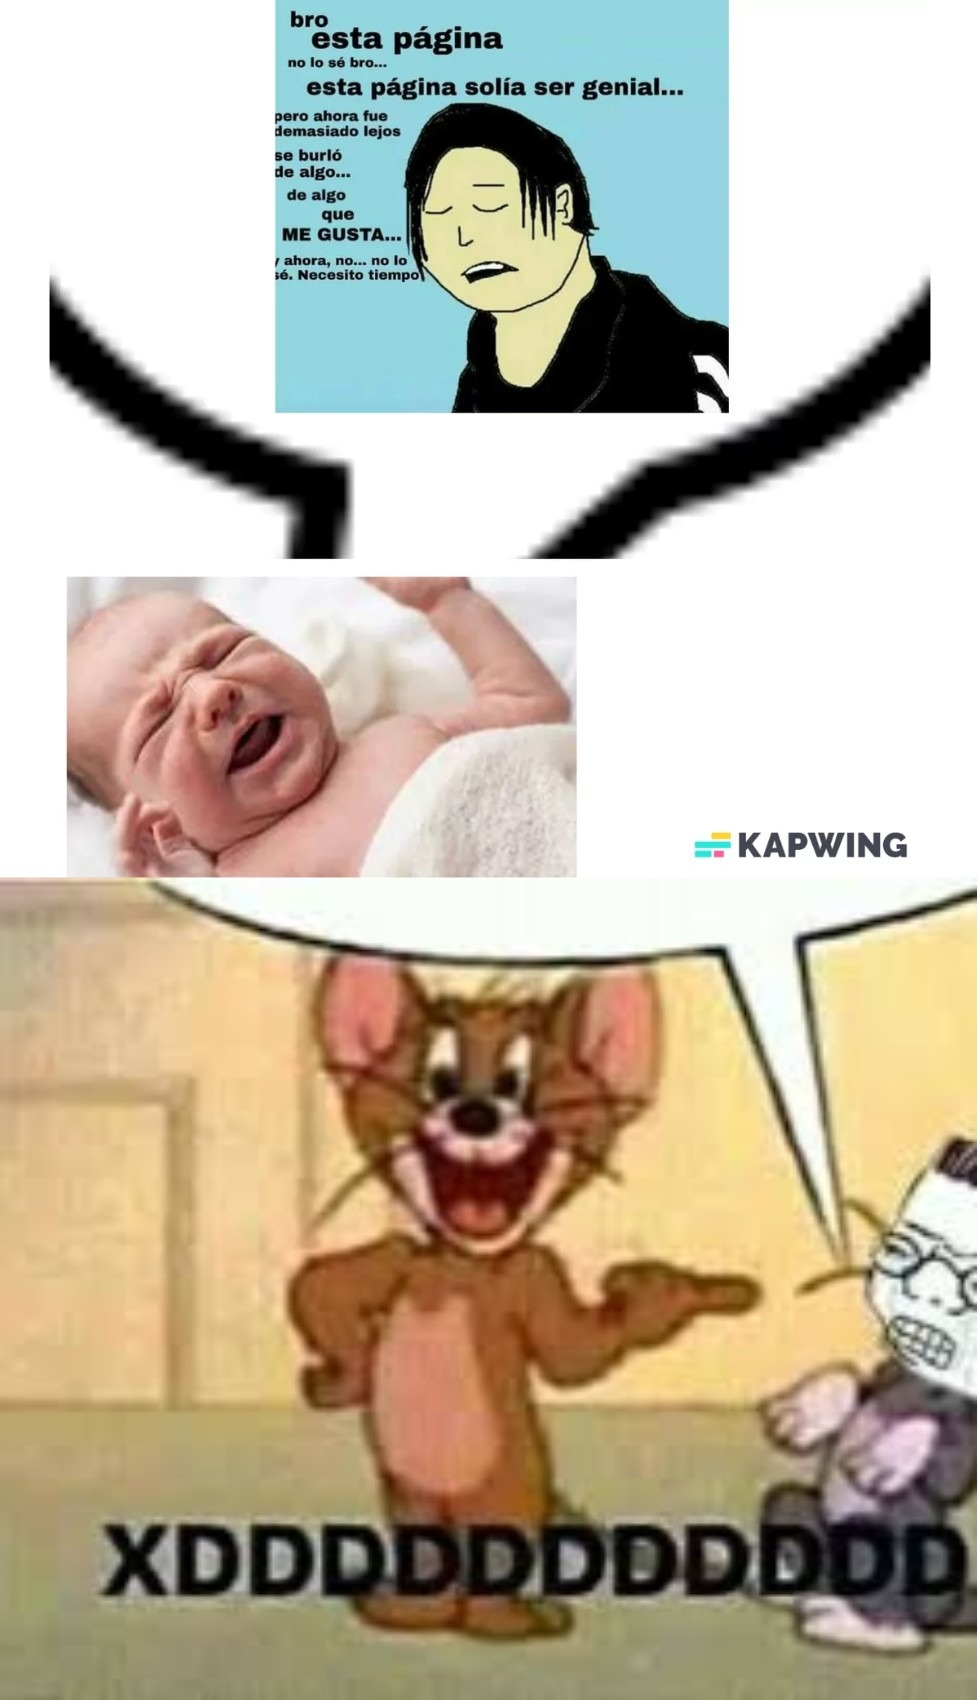 Imagina usar kapwing XD - meme